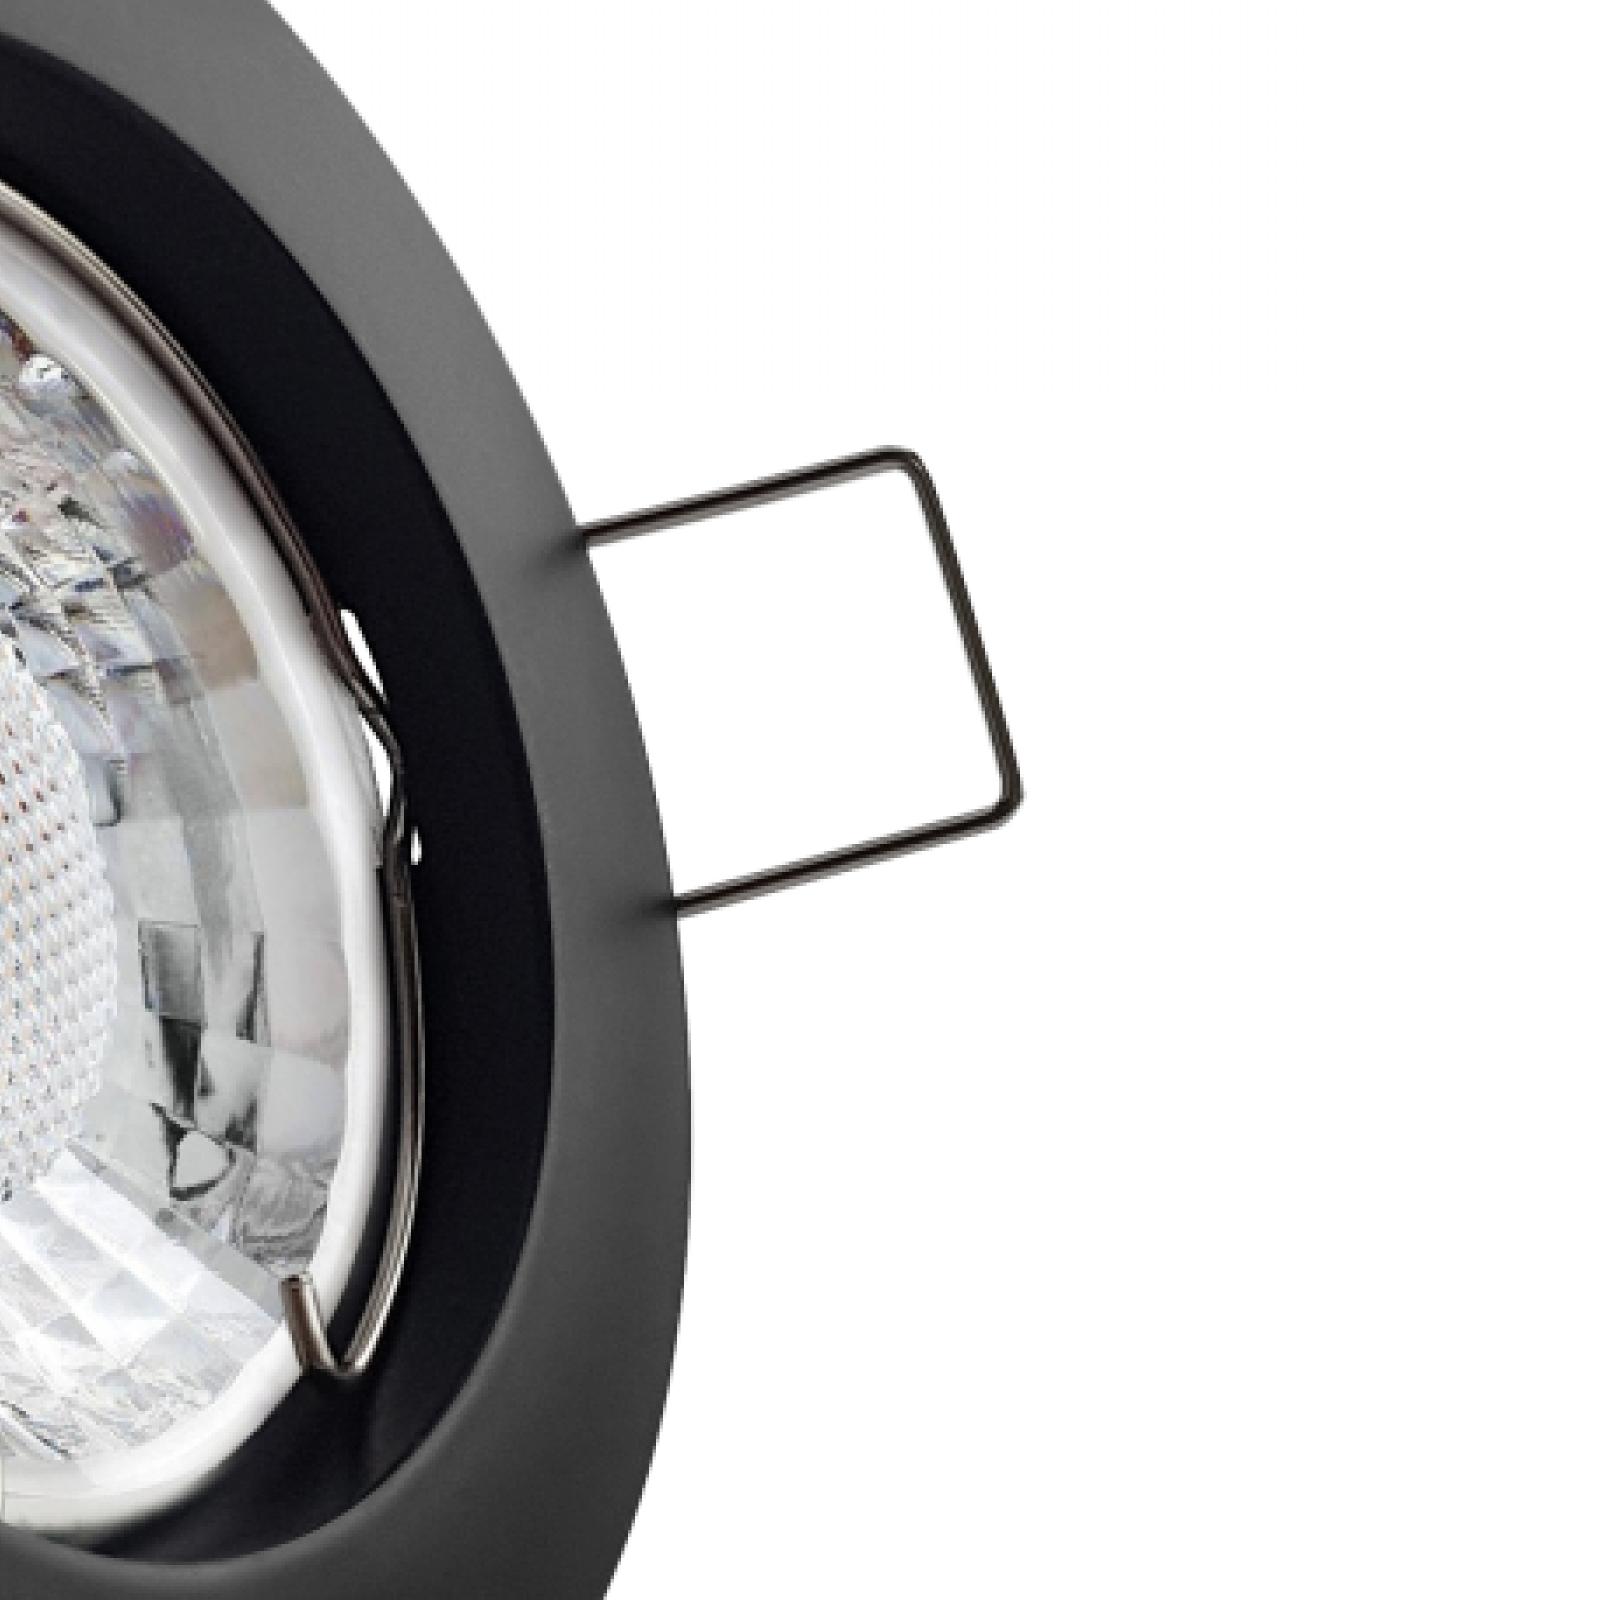 LED Einbaustrahler schwarz | Runder Einbauspot | Lochmaß Ø 60mm - 70mm | Einbautiefe 64mm | Anschlussfertig mit GU10 230V Fassung 